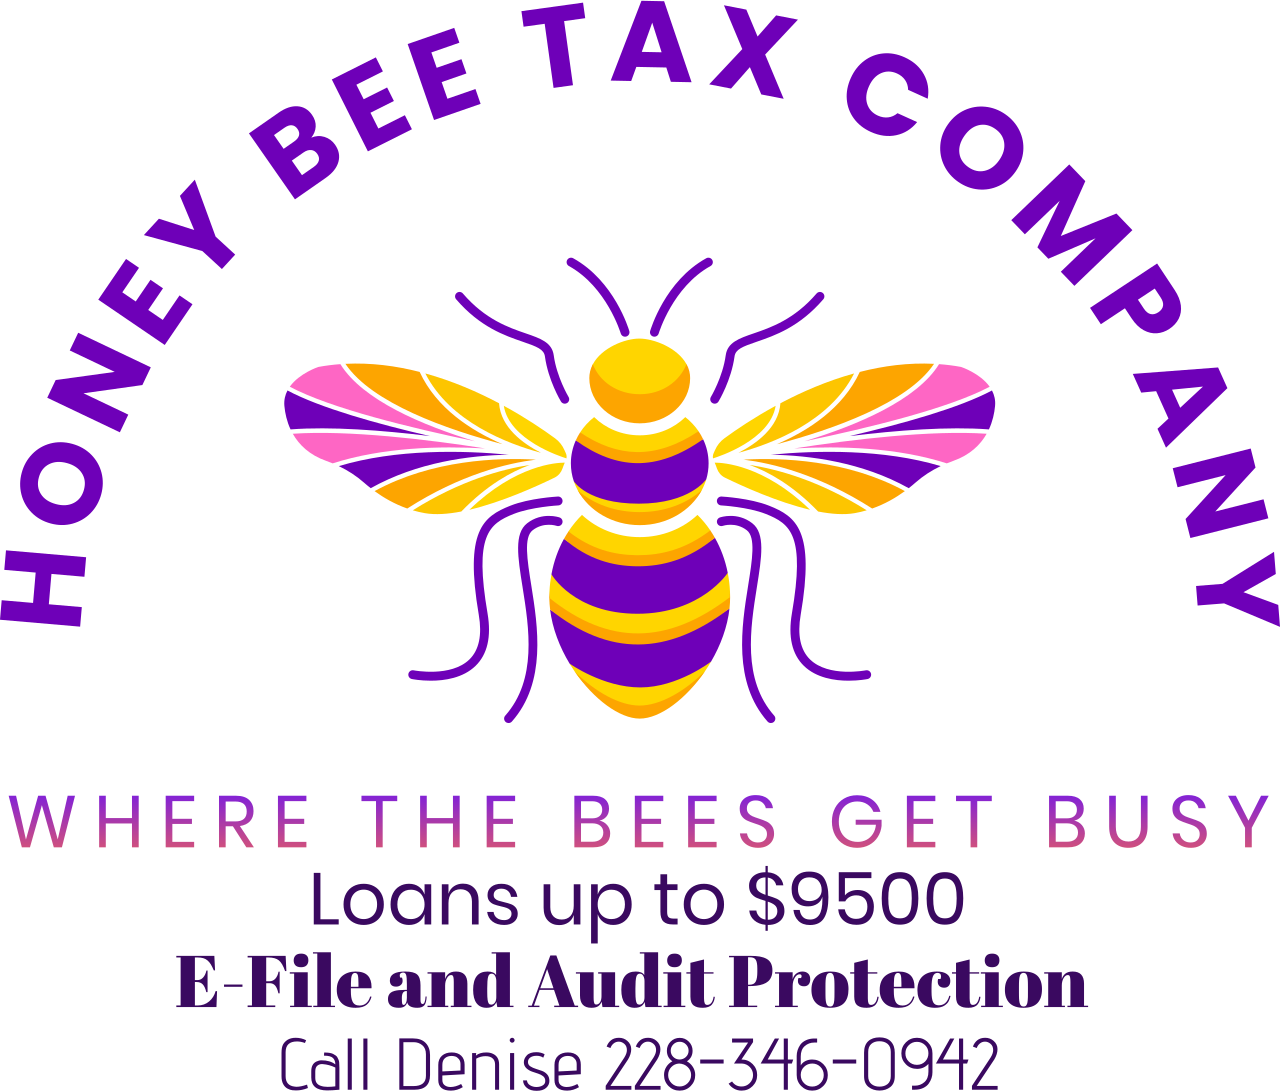 Honey Bee Tax Company's web page